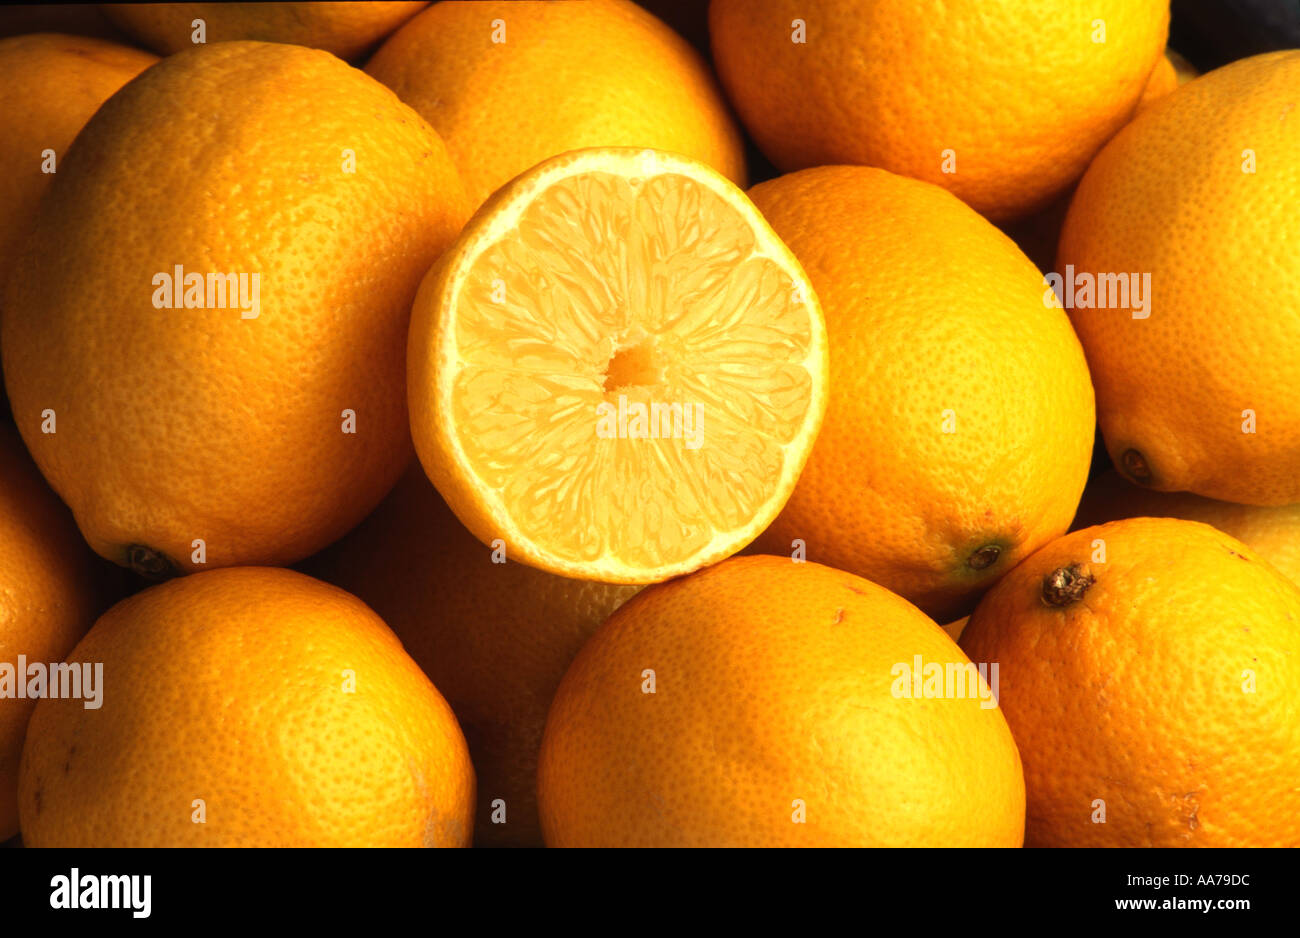 Agrumi frutta limone limoni giallo per alimenti acido acida limone zitronen Foto Stock